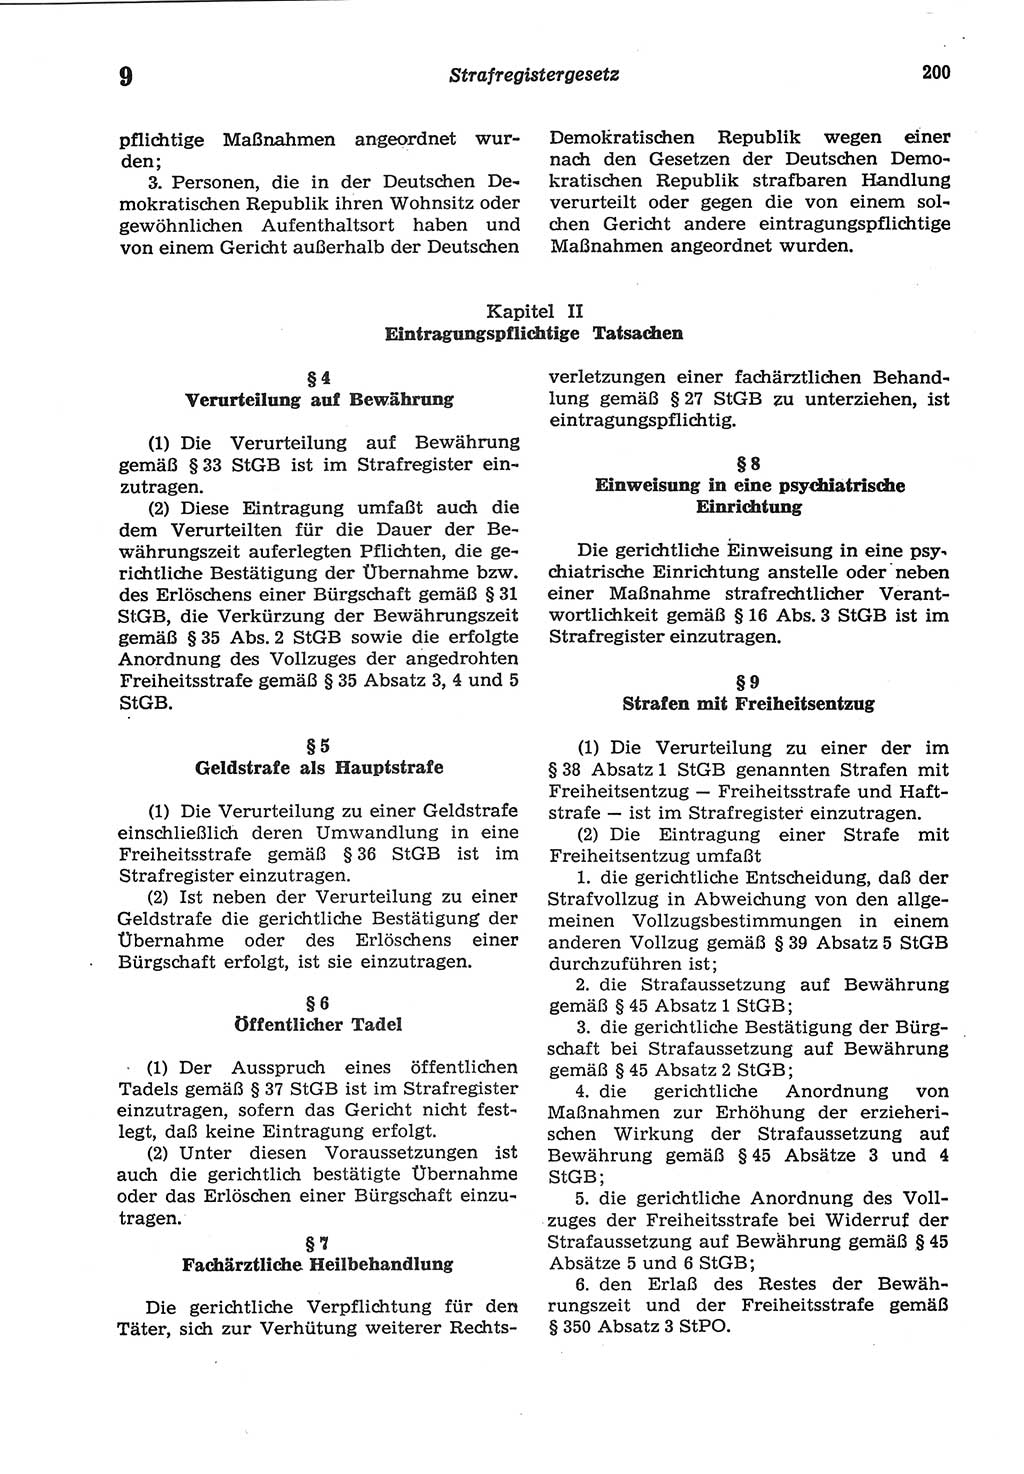 Strafprozeßordnung (StPO) der Deutschen Demokratischen Republik (DDR) sowie angrenzende Gesetze und Bestimmungen 1977, Seite 200 (StPO DDR Ges. Best. 1977, S. 200)